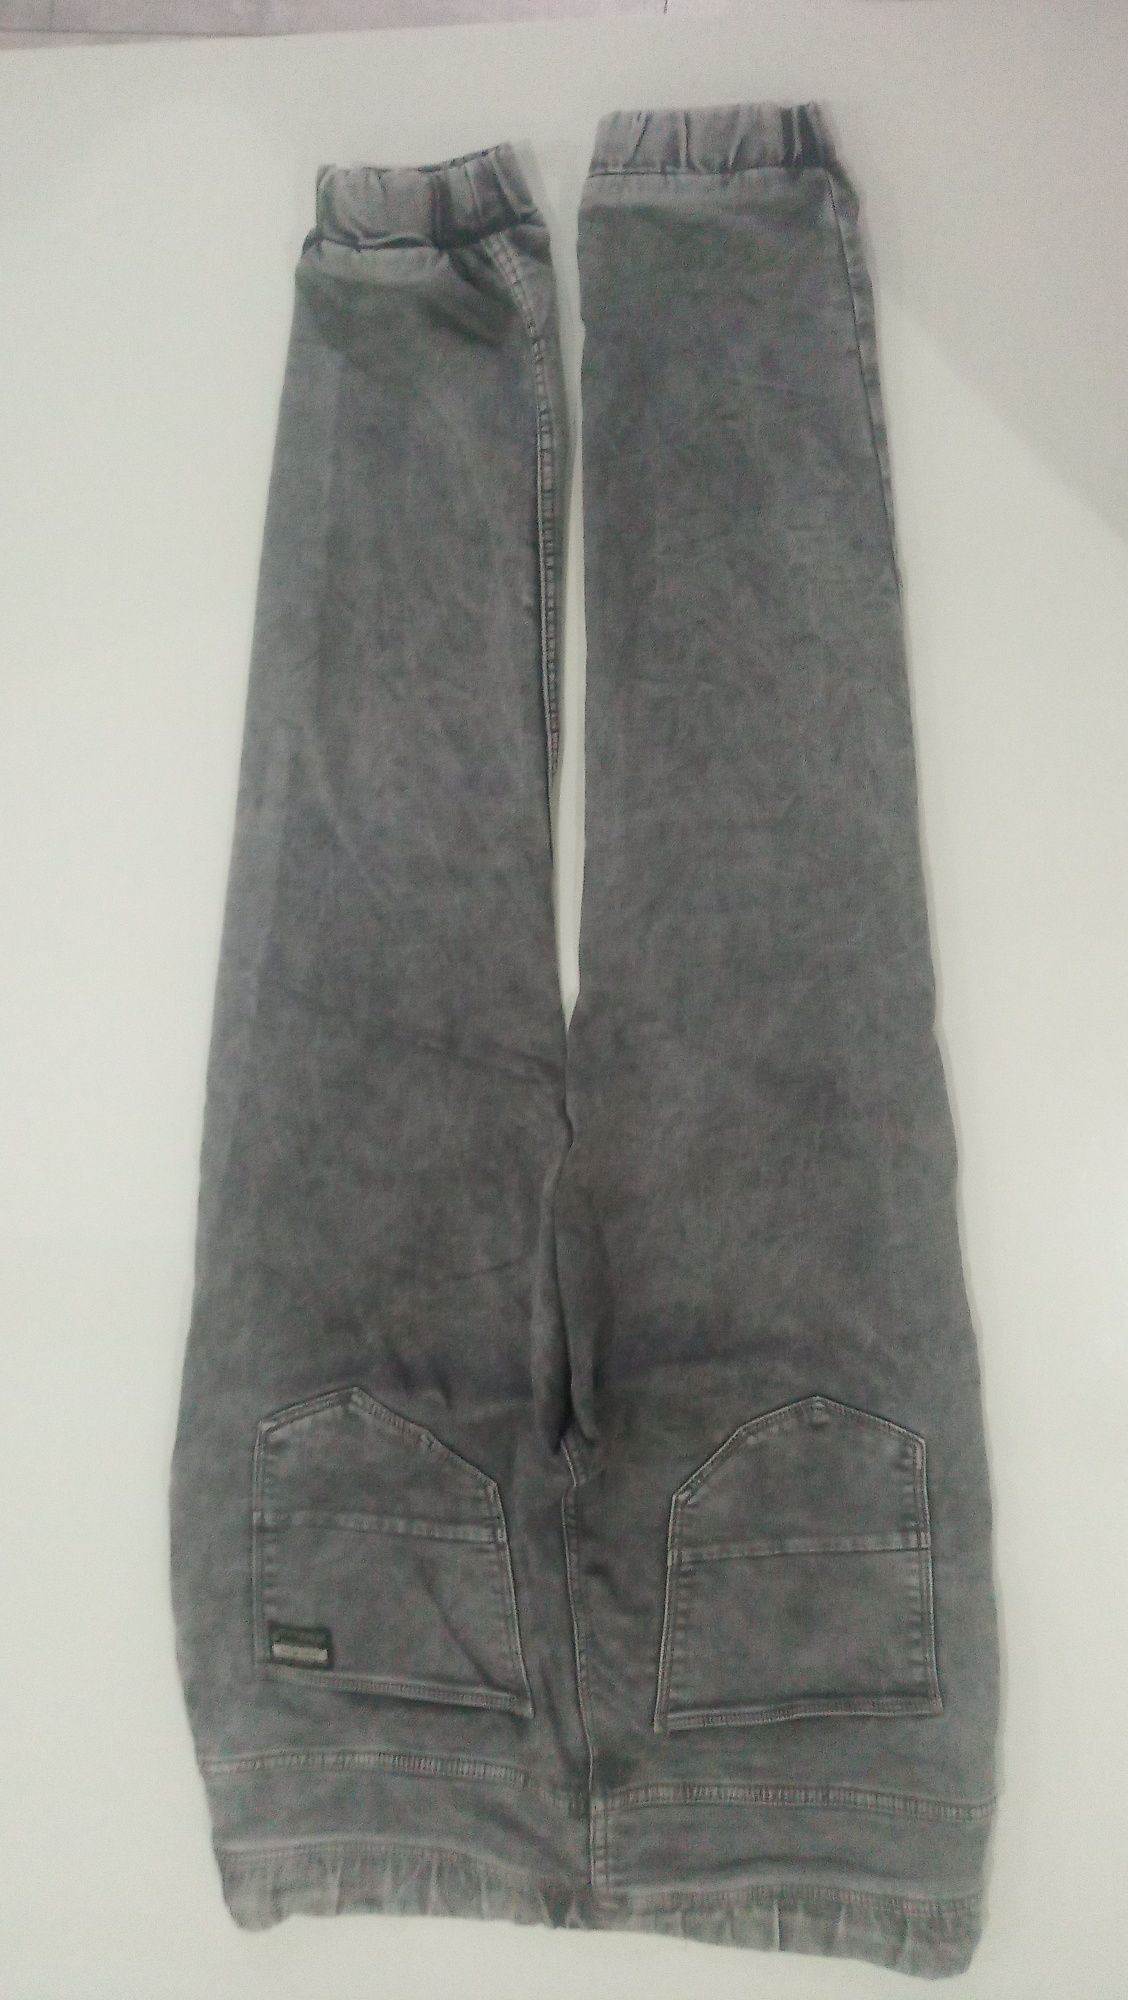 Spodnie męskie House jeans 31/32